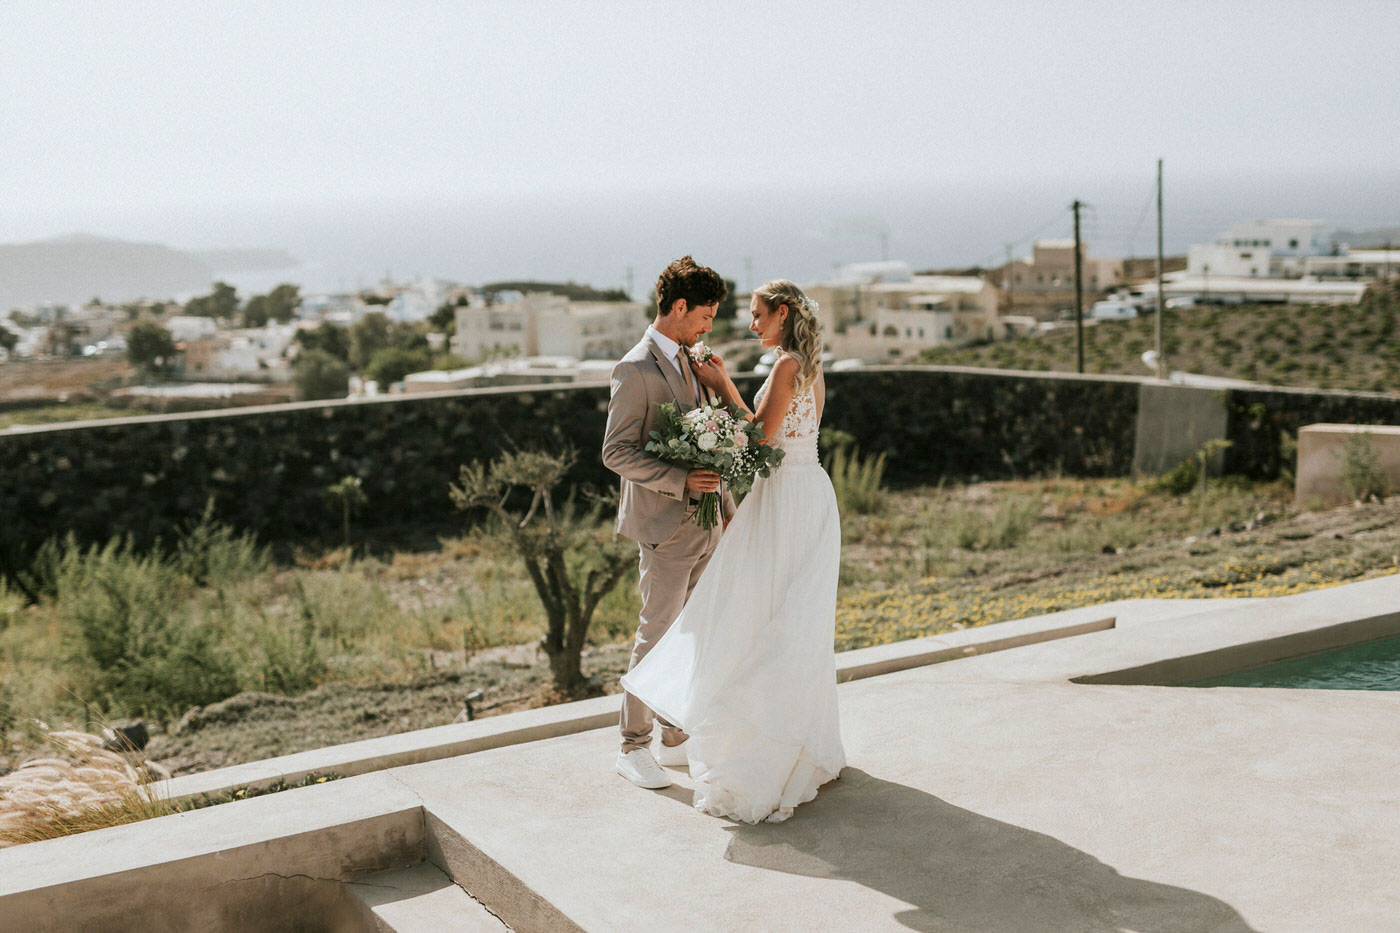 Romantic El Viento Wedding in Greece